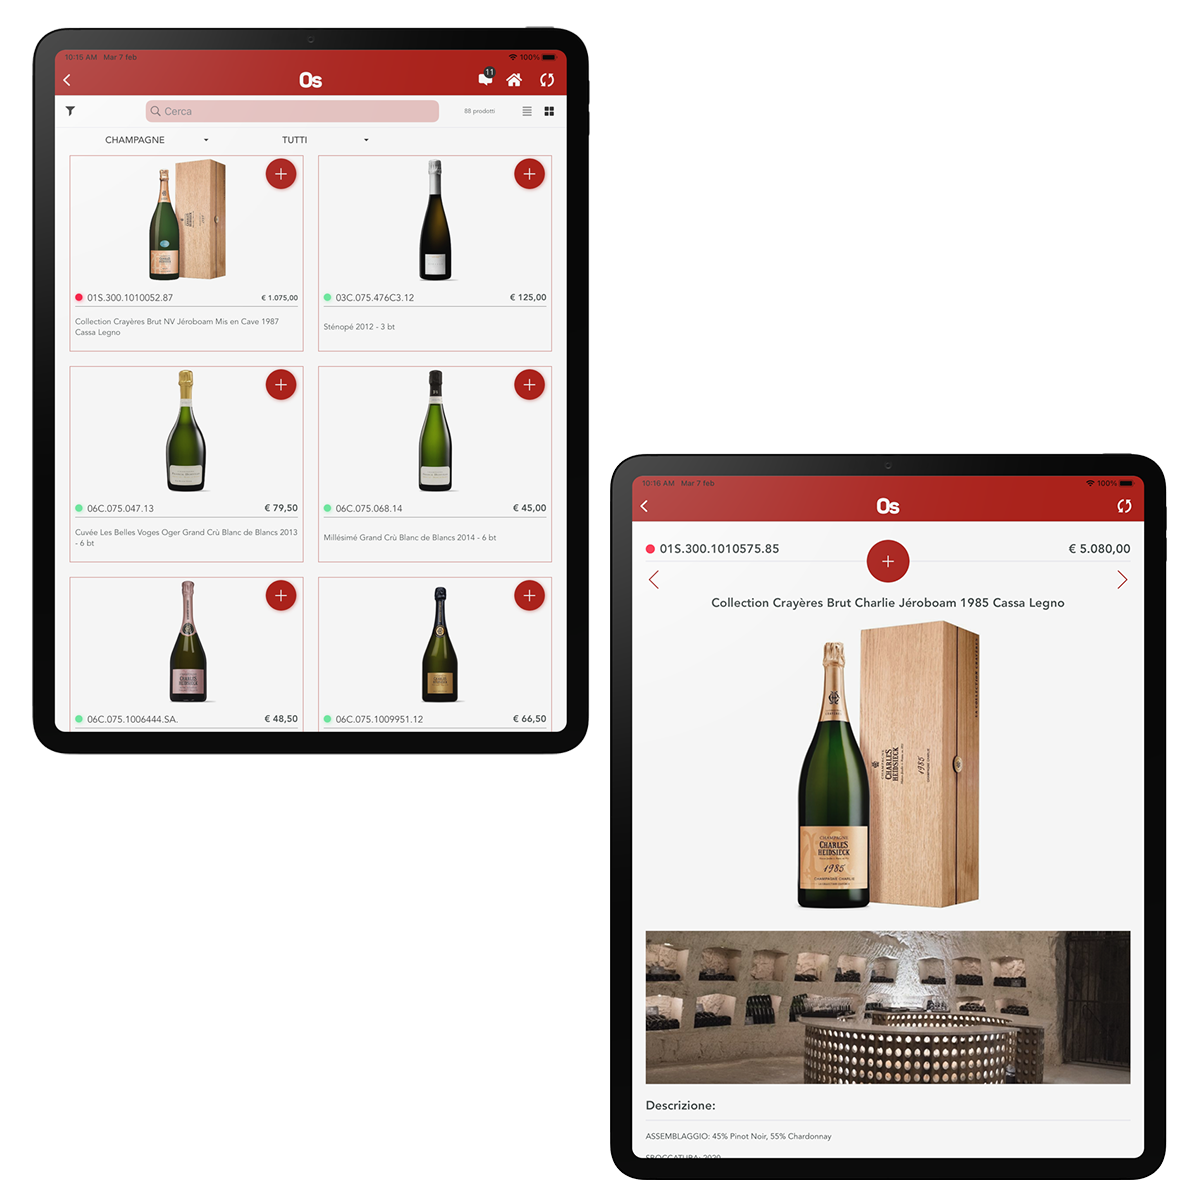 philarmonica vini digitalizzazione aziendale rete vendita order sender enterprise